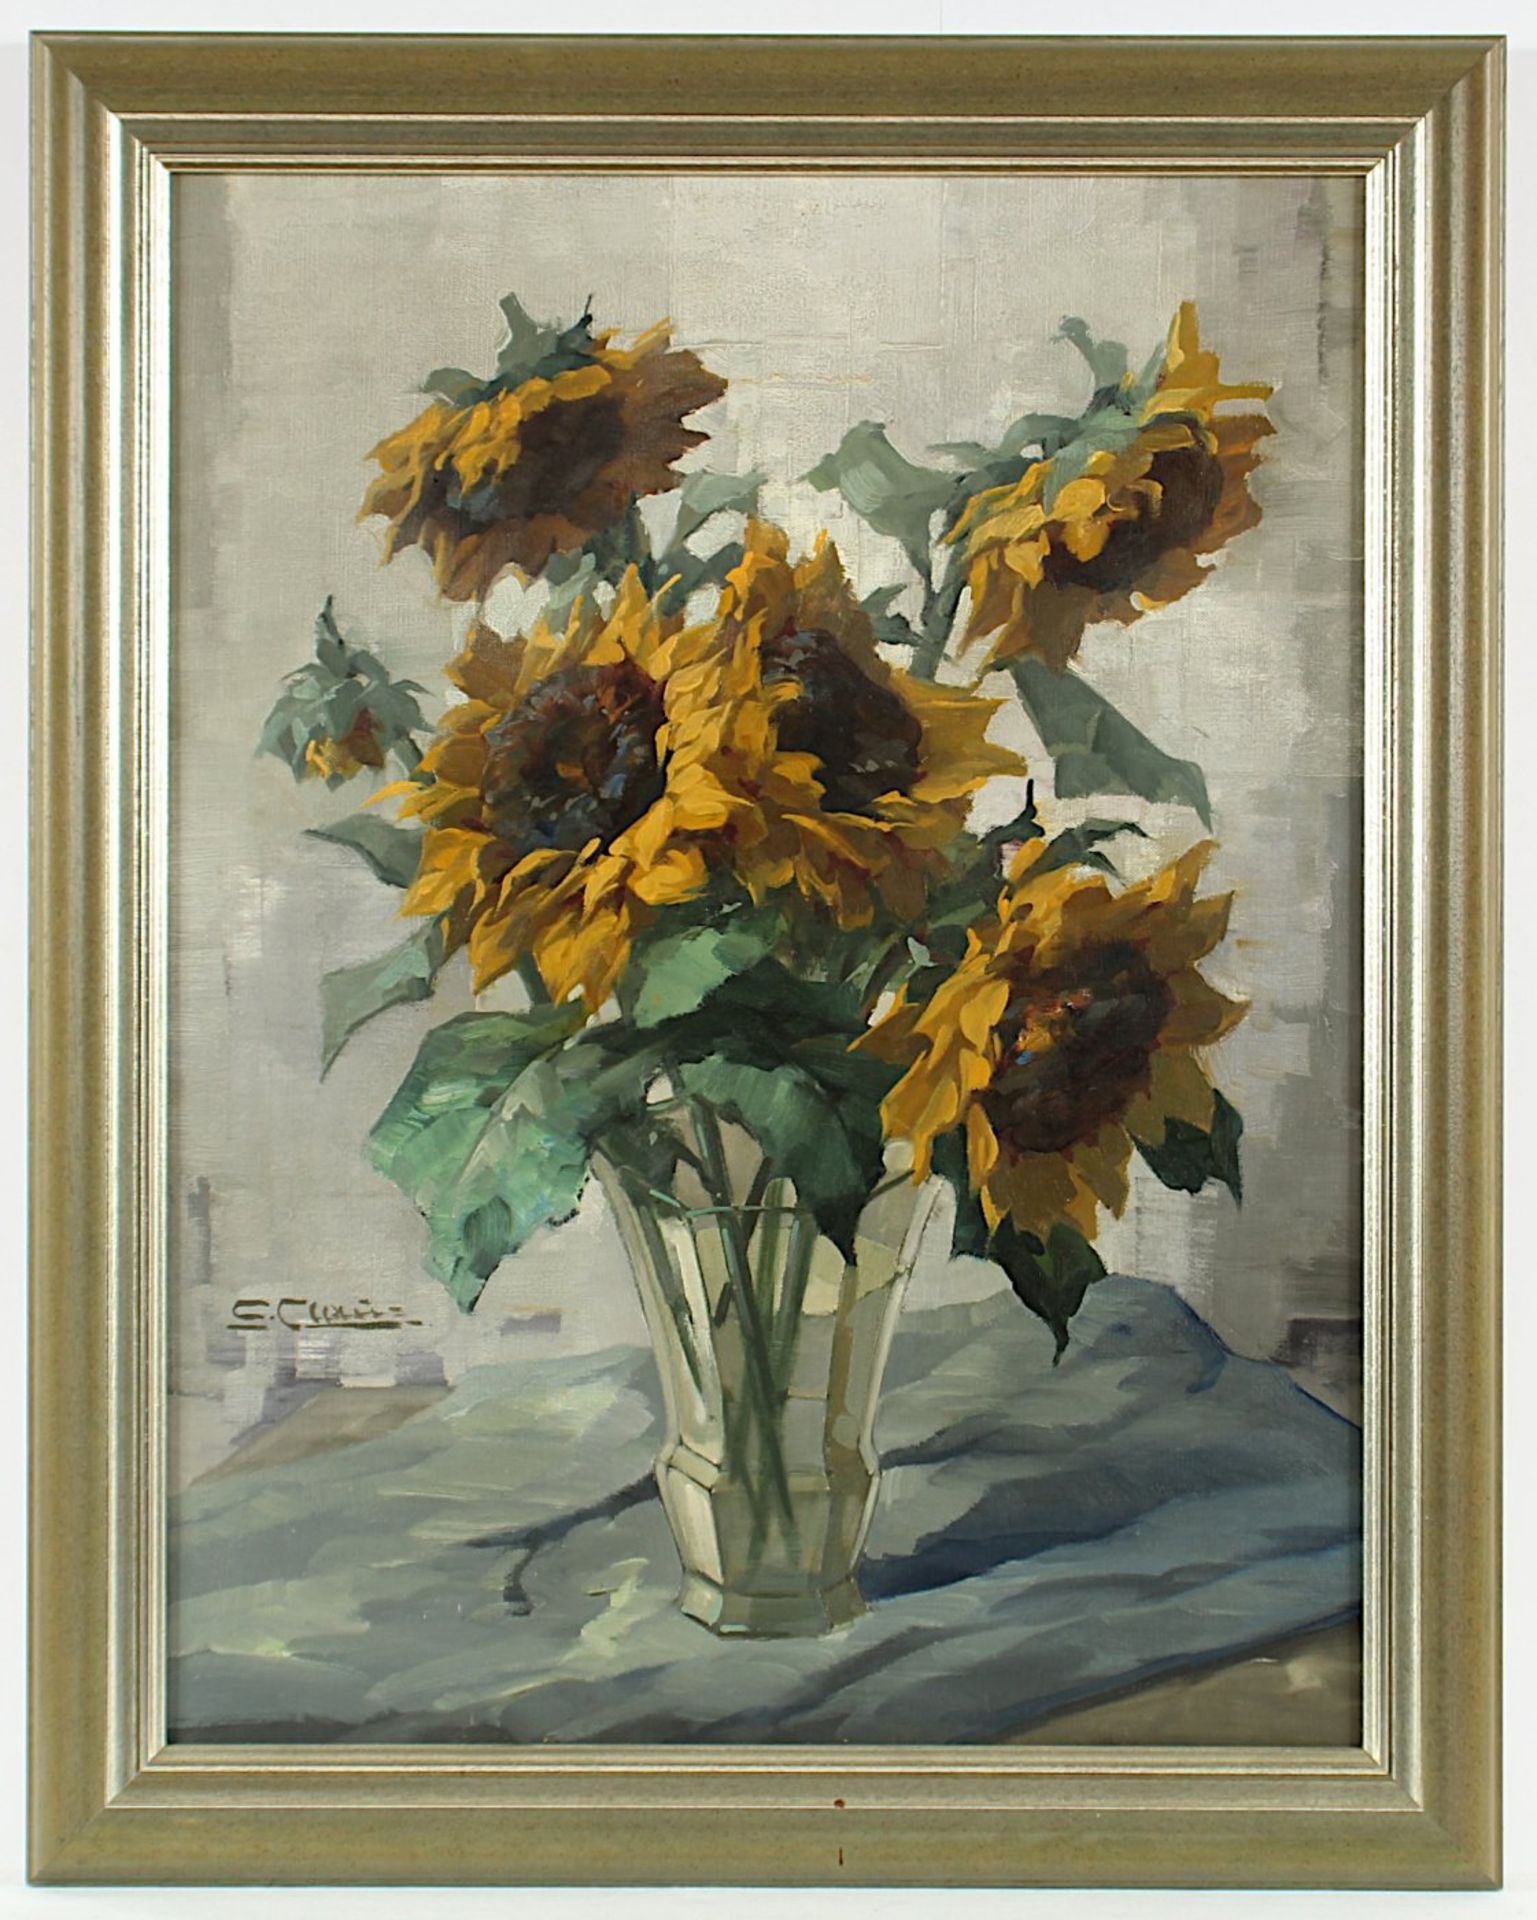 CLAUS, C. (Maler um 1940), "Stilleben mit Sonnenblumen", Öl/Lwd., 70,5 x 54, unten links signiert,